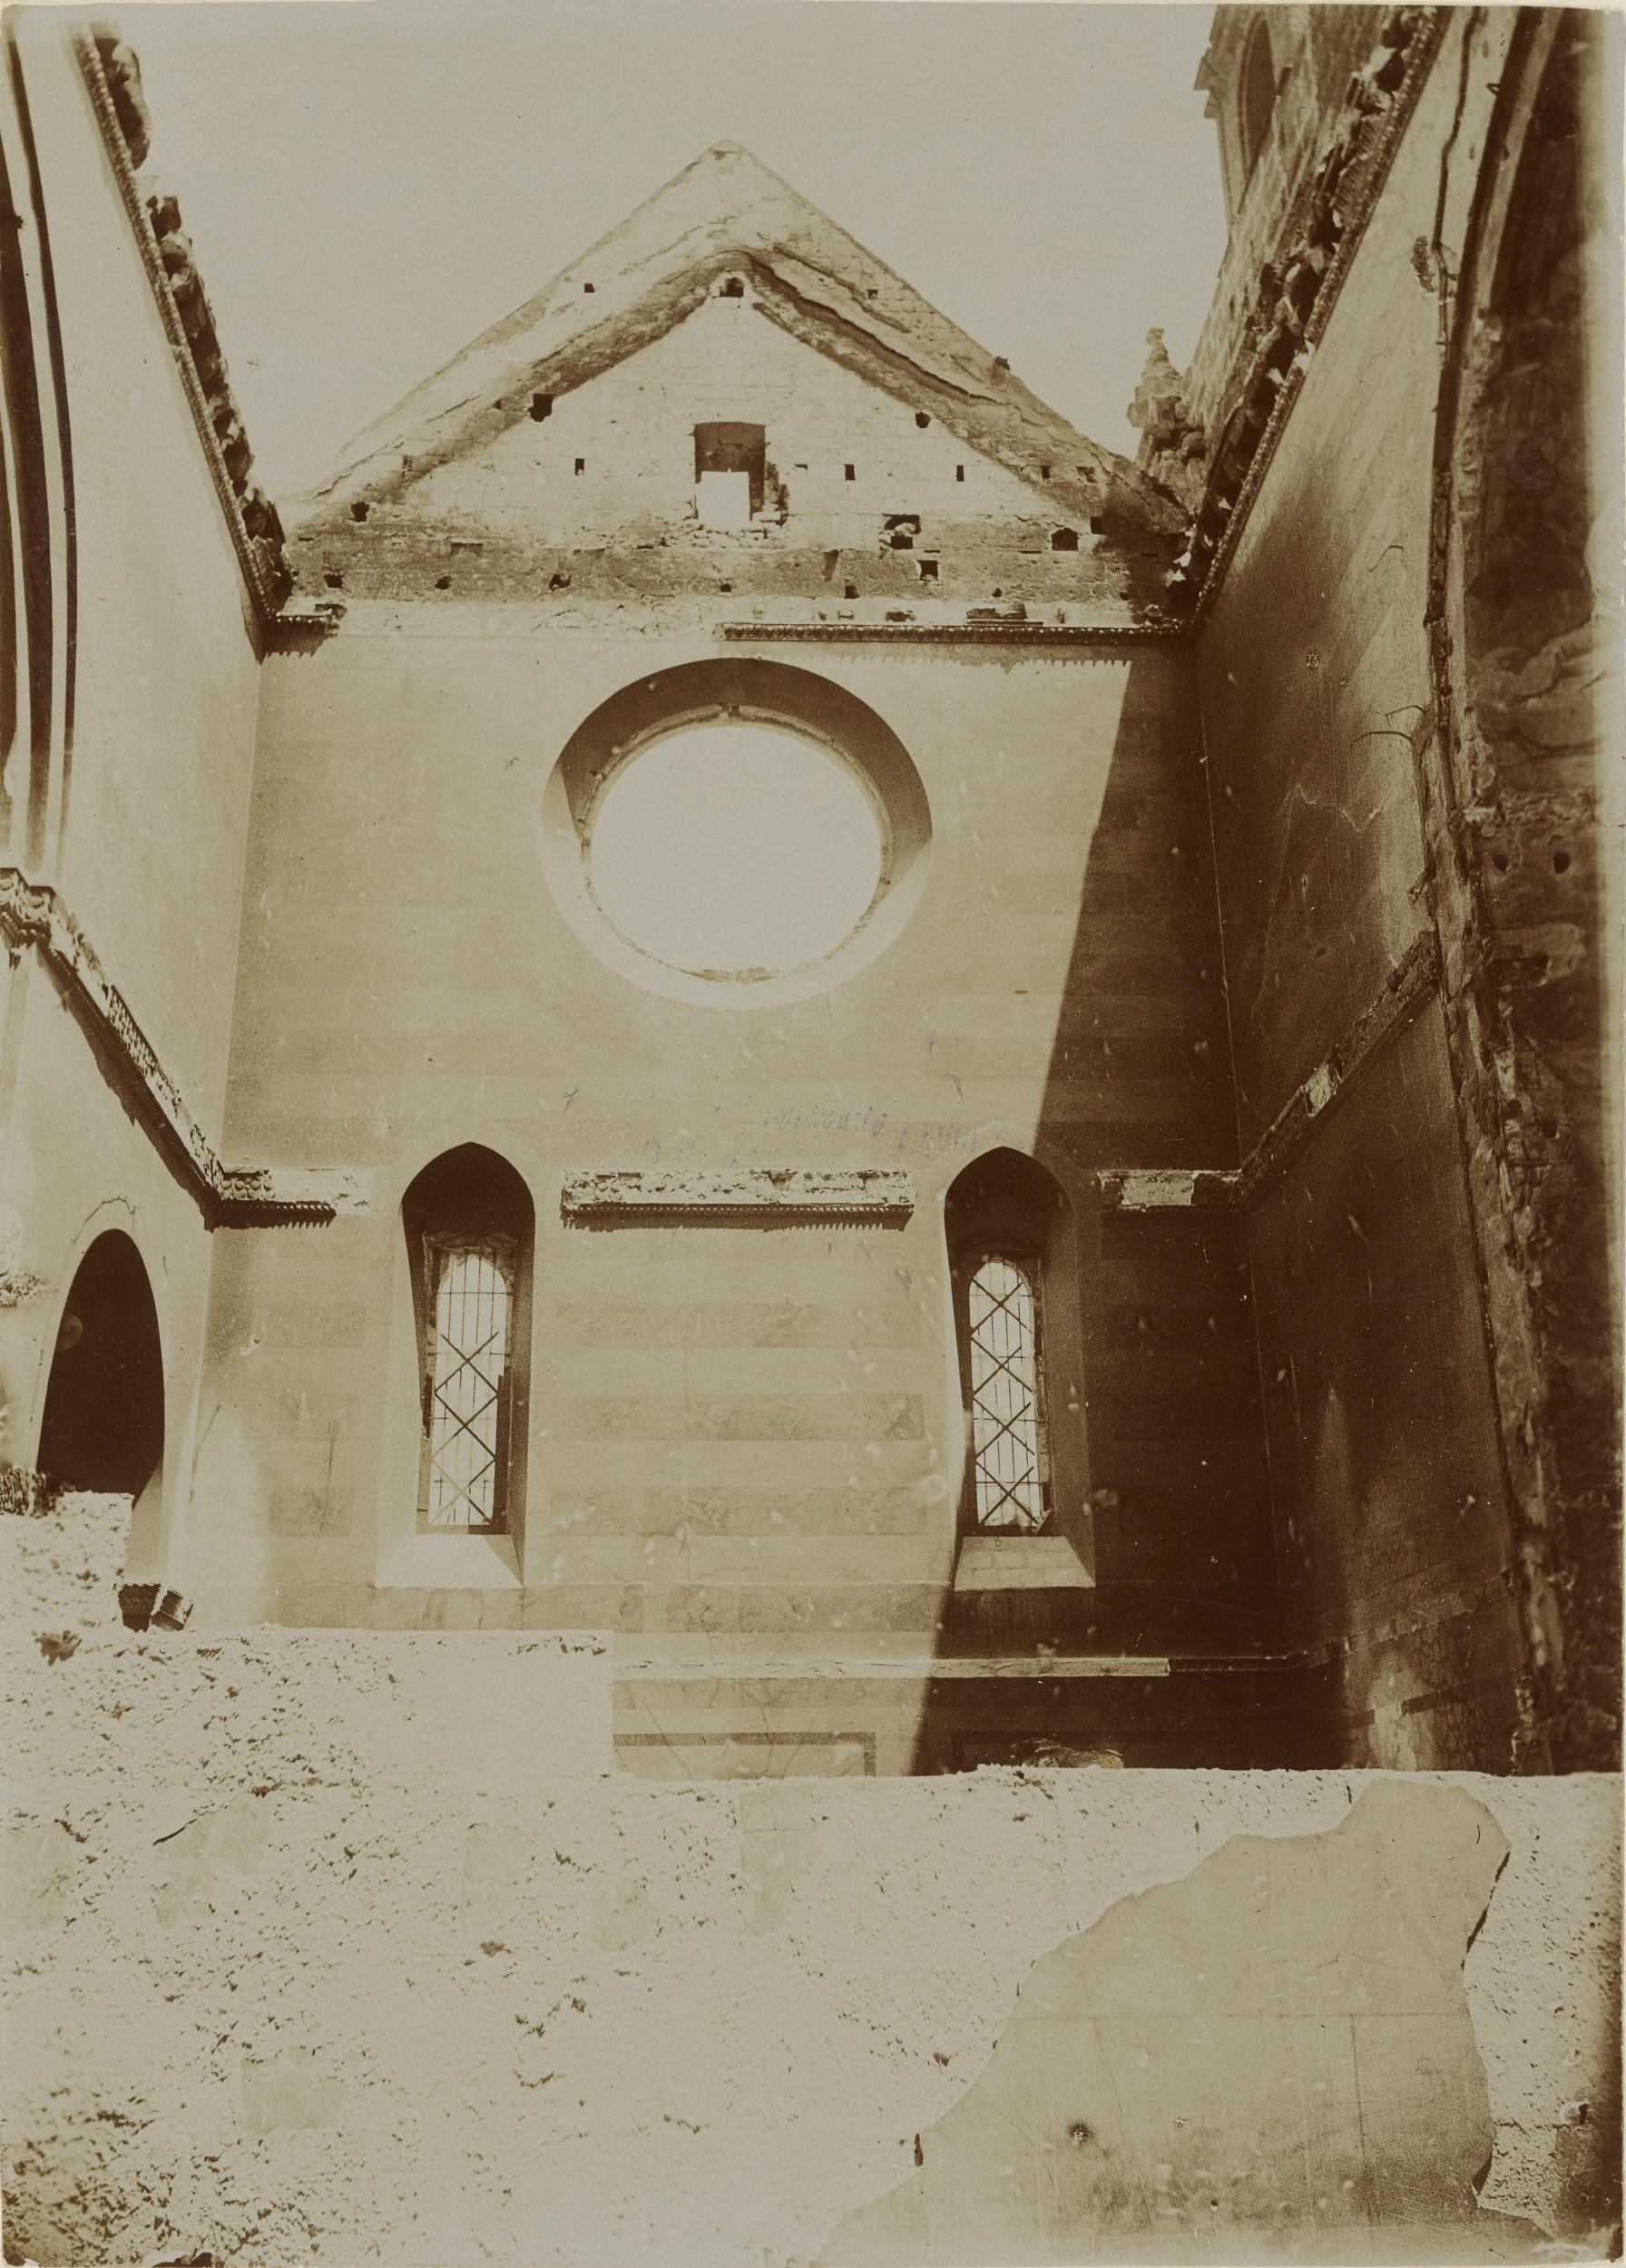 Fotografo non identificato, Conversano - Cattedrale, parete destra del transetto, dopo l'incendio del 1911, 1901-1910, aristotipo, MPI155341